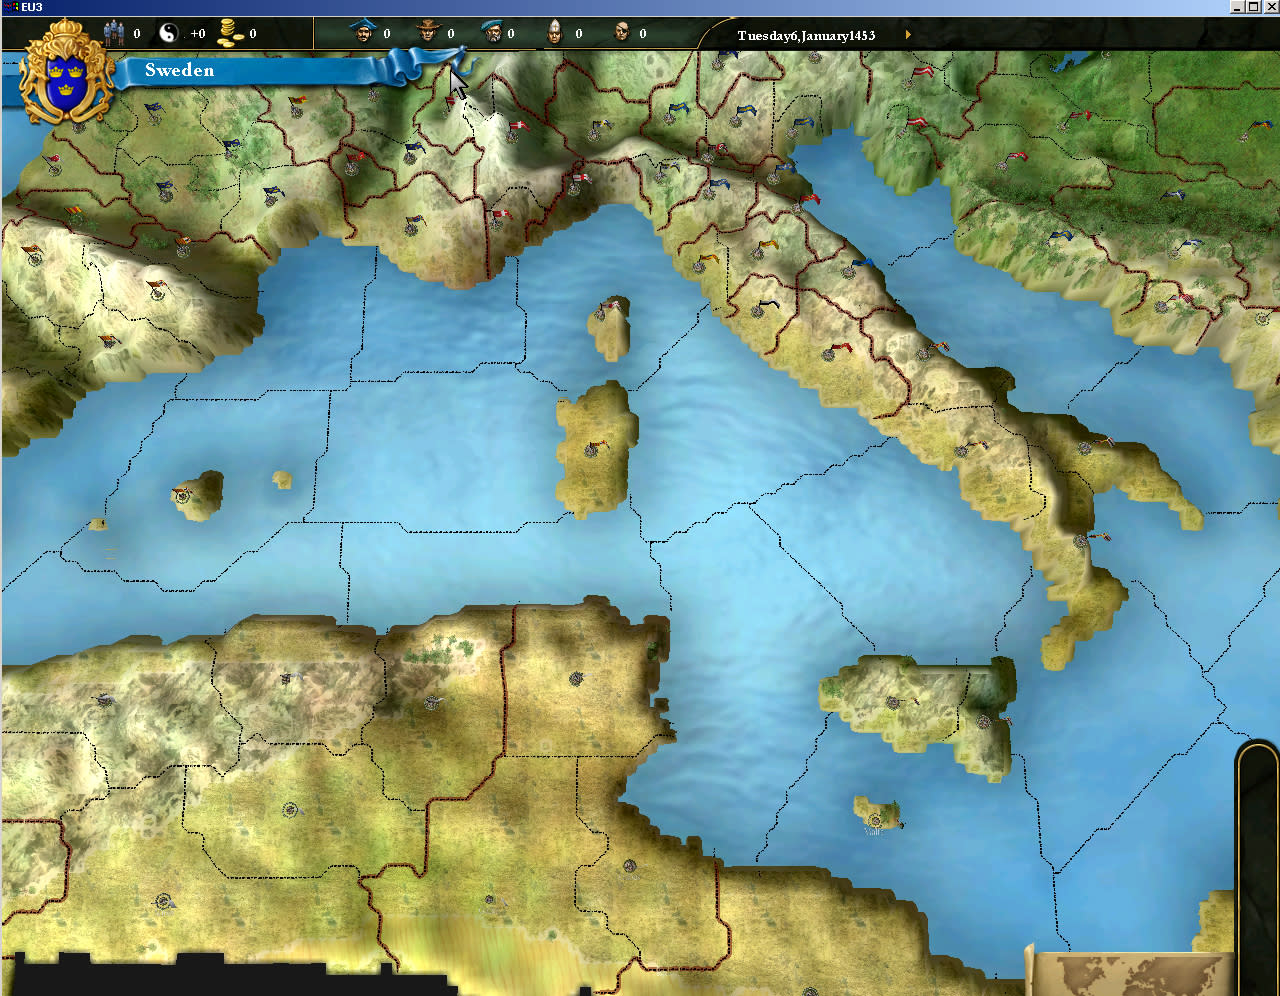 Europa Universalis III (screenshot 9)